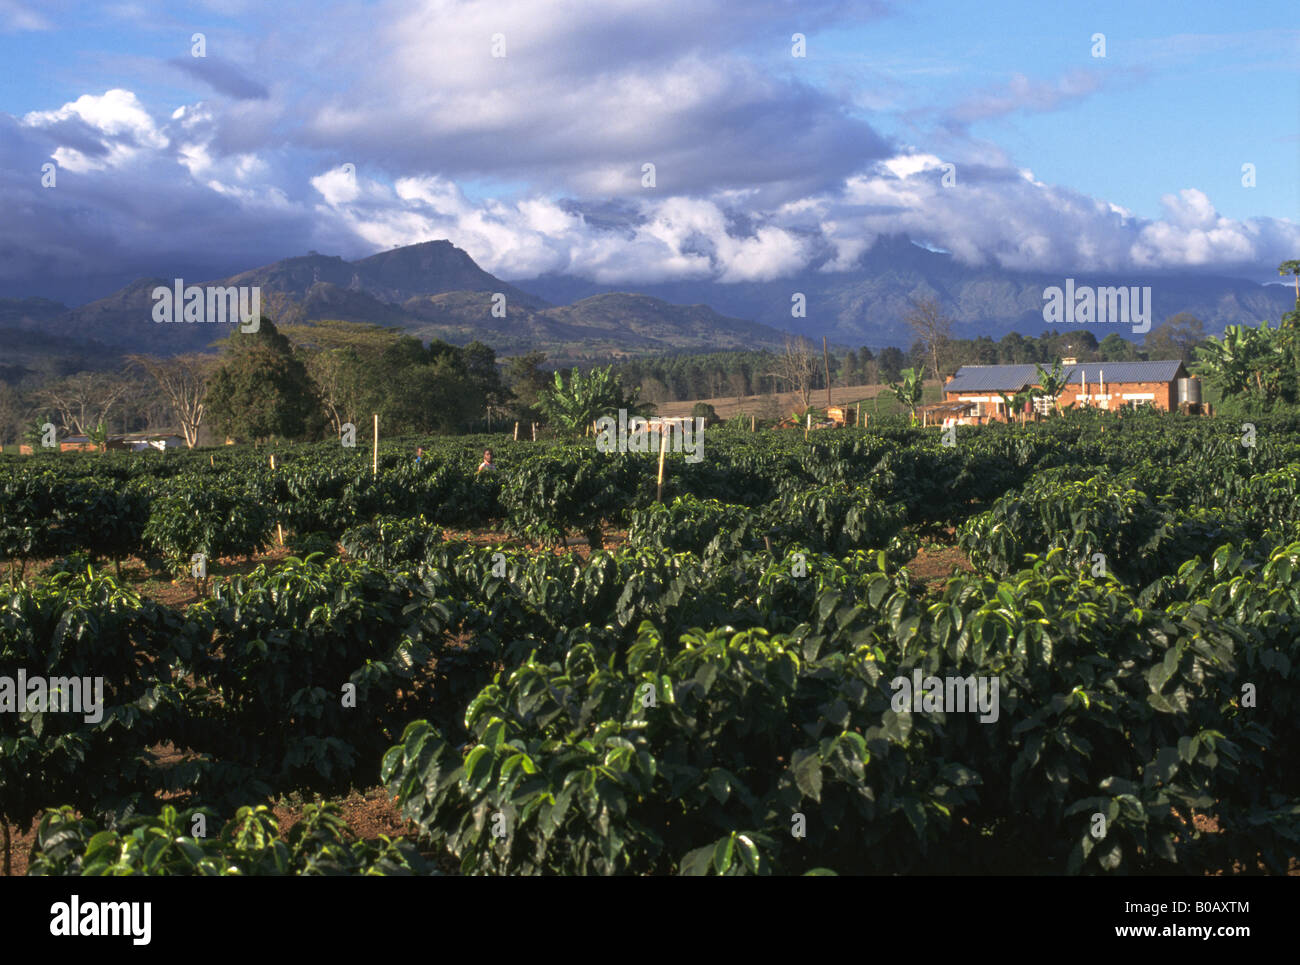 Bussole di caffè, casa, alberi, mountain & cloud, Malawi. Foto Stock